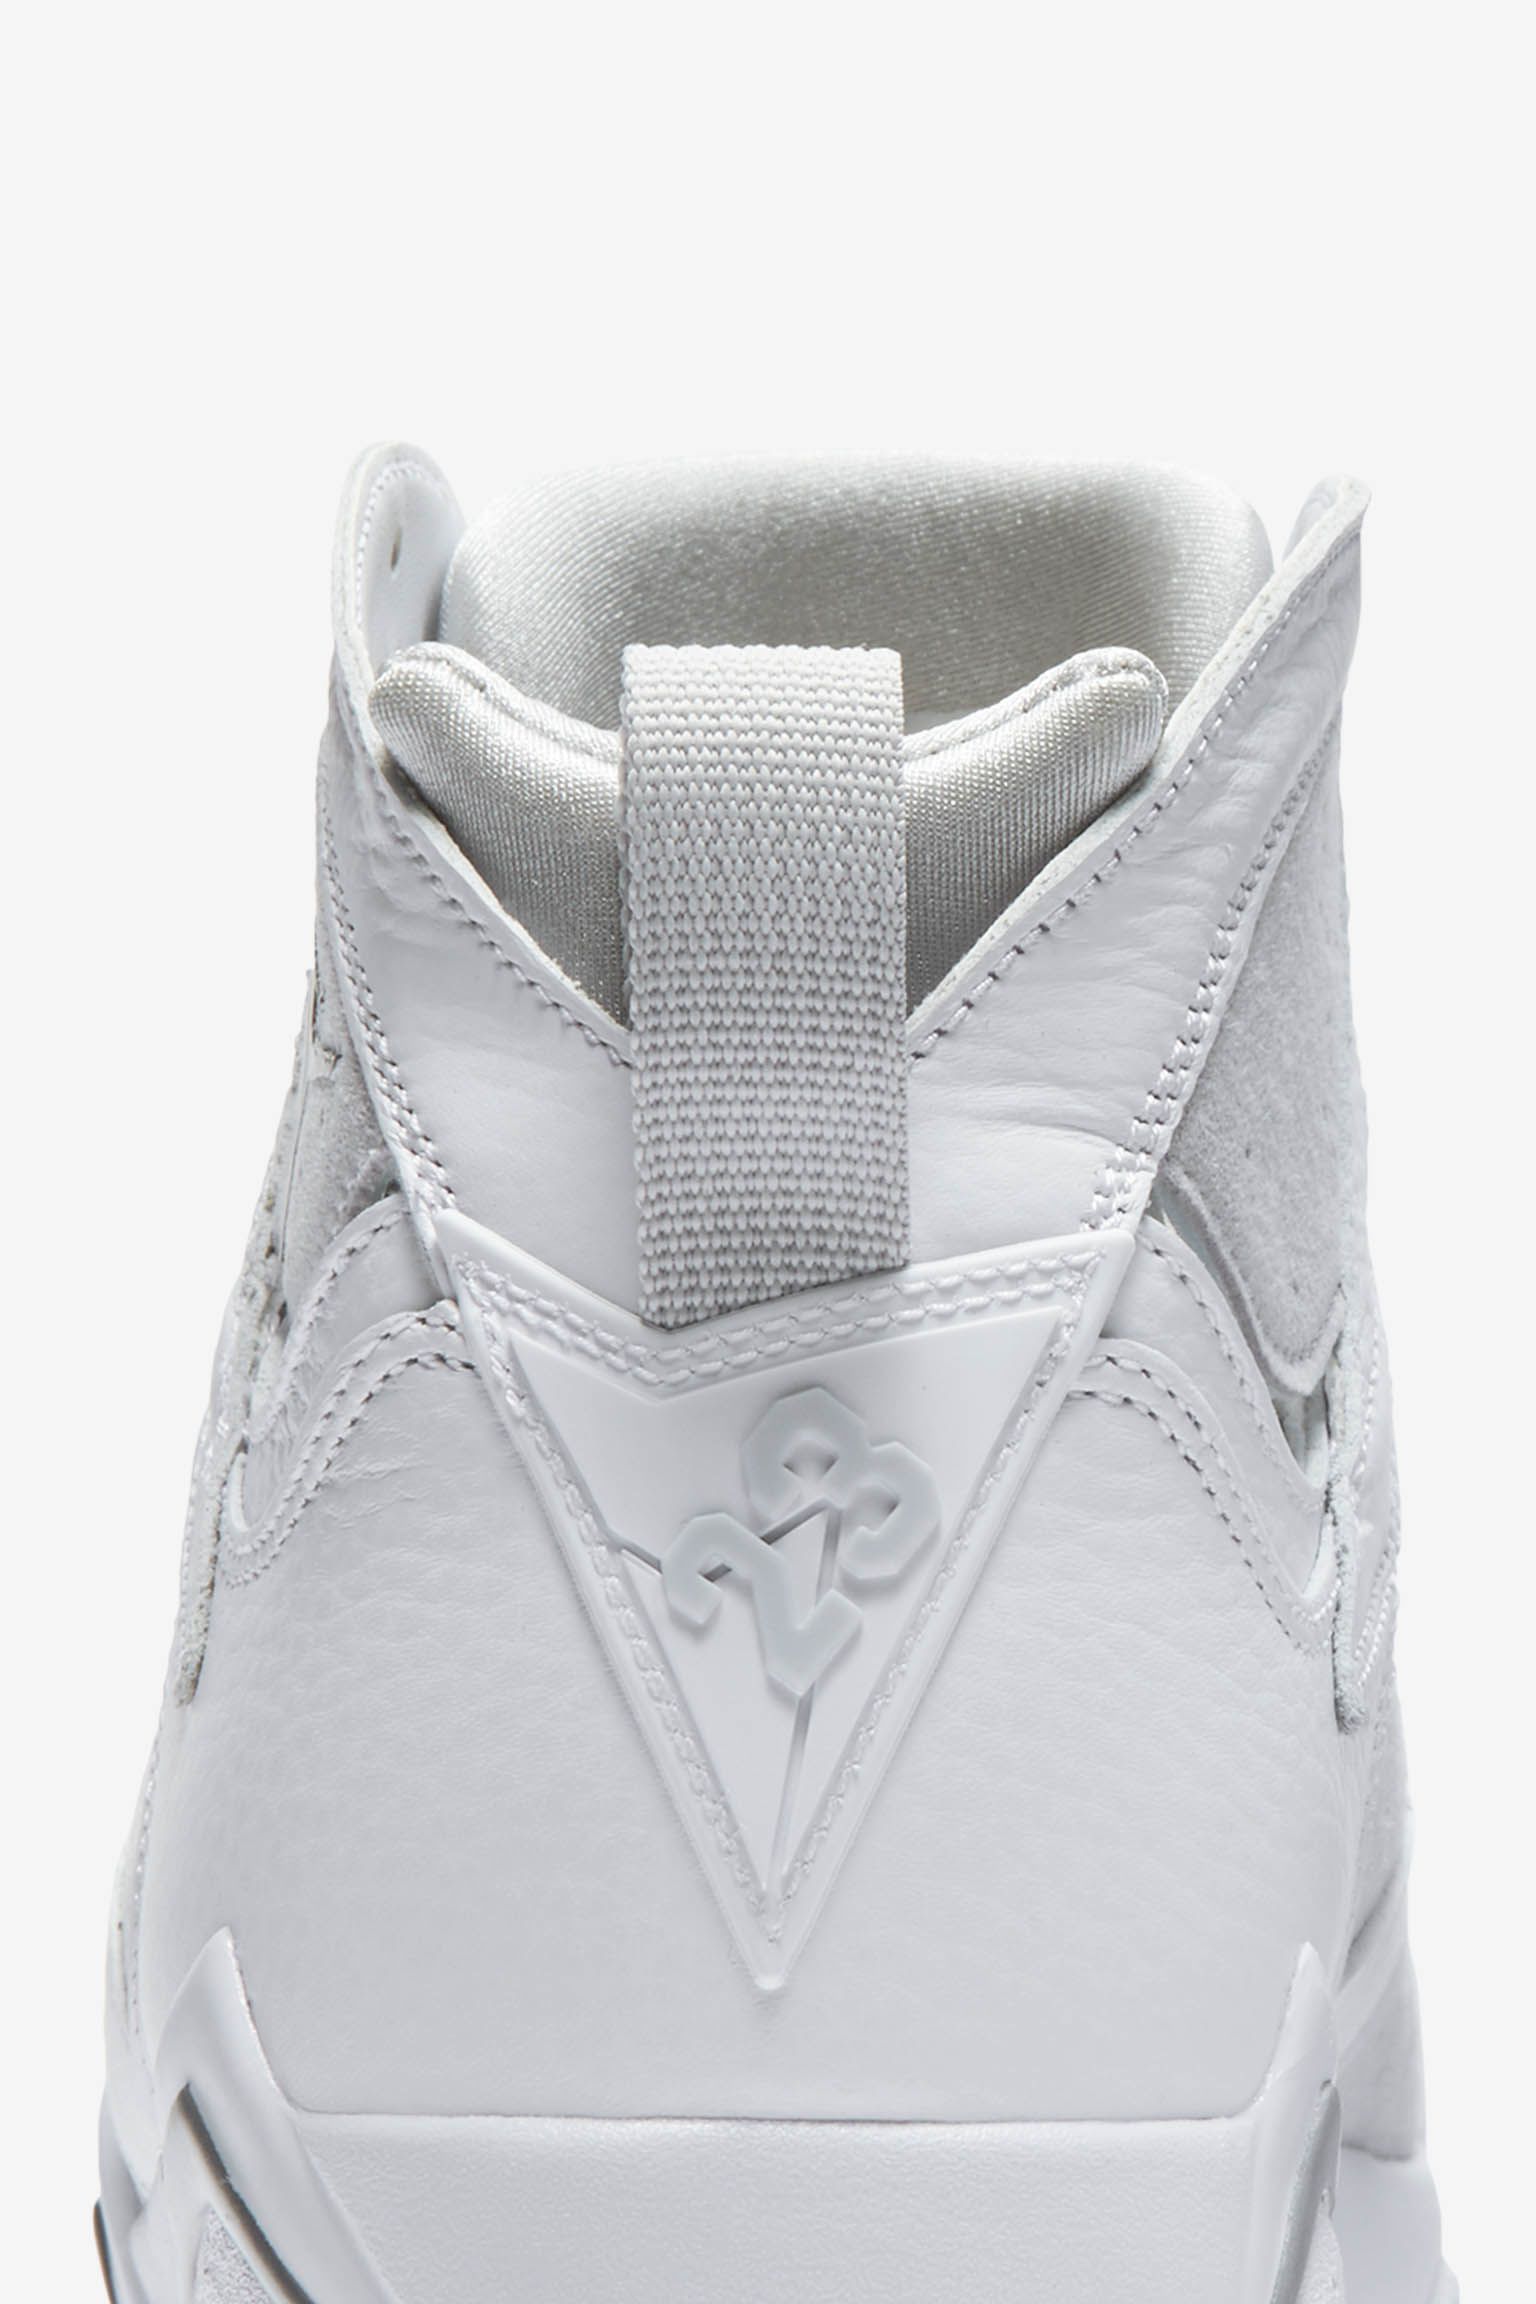 エア ジョーダン 7 レトロ 'White & Pure Platinum' 発売日. Nike